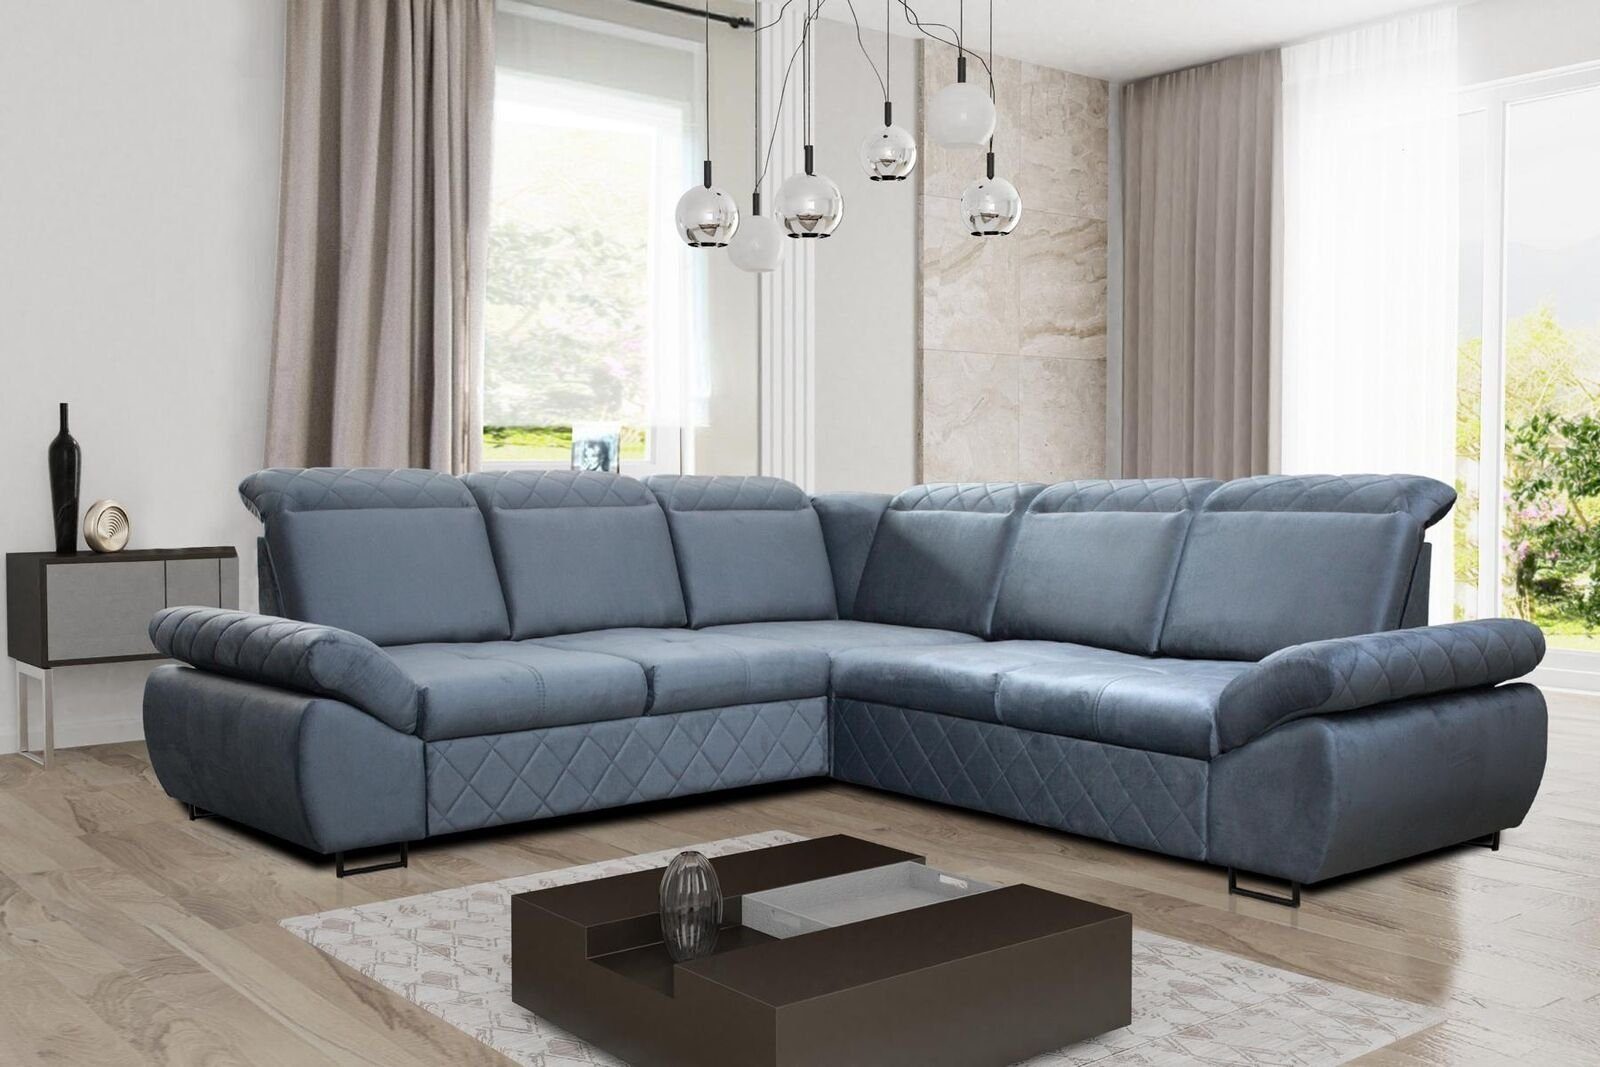 JVmoebel Ecksofa Moderne Design Sofas Couchs Möbel Textil LForm Neu  Wohnzimmer Ecksofa, Mit Bettfunktion